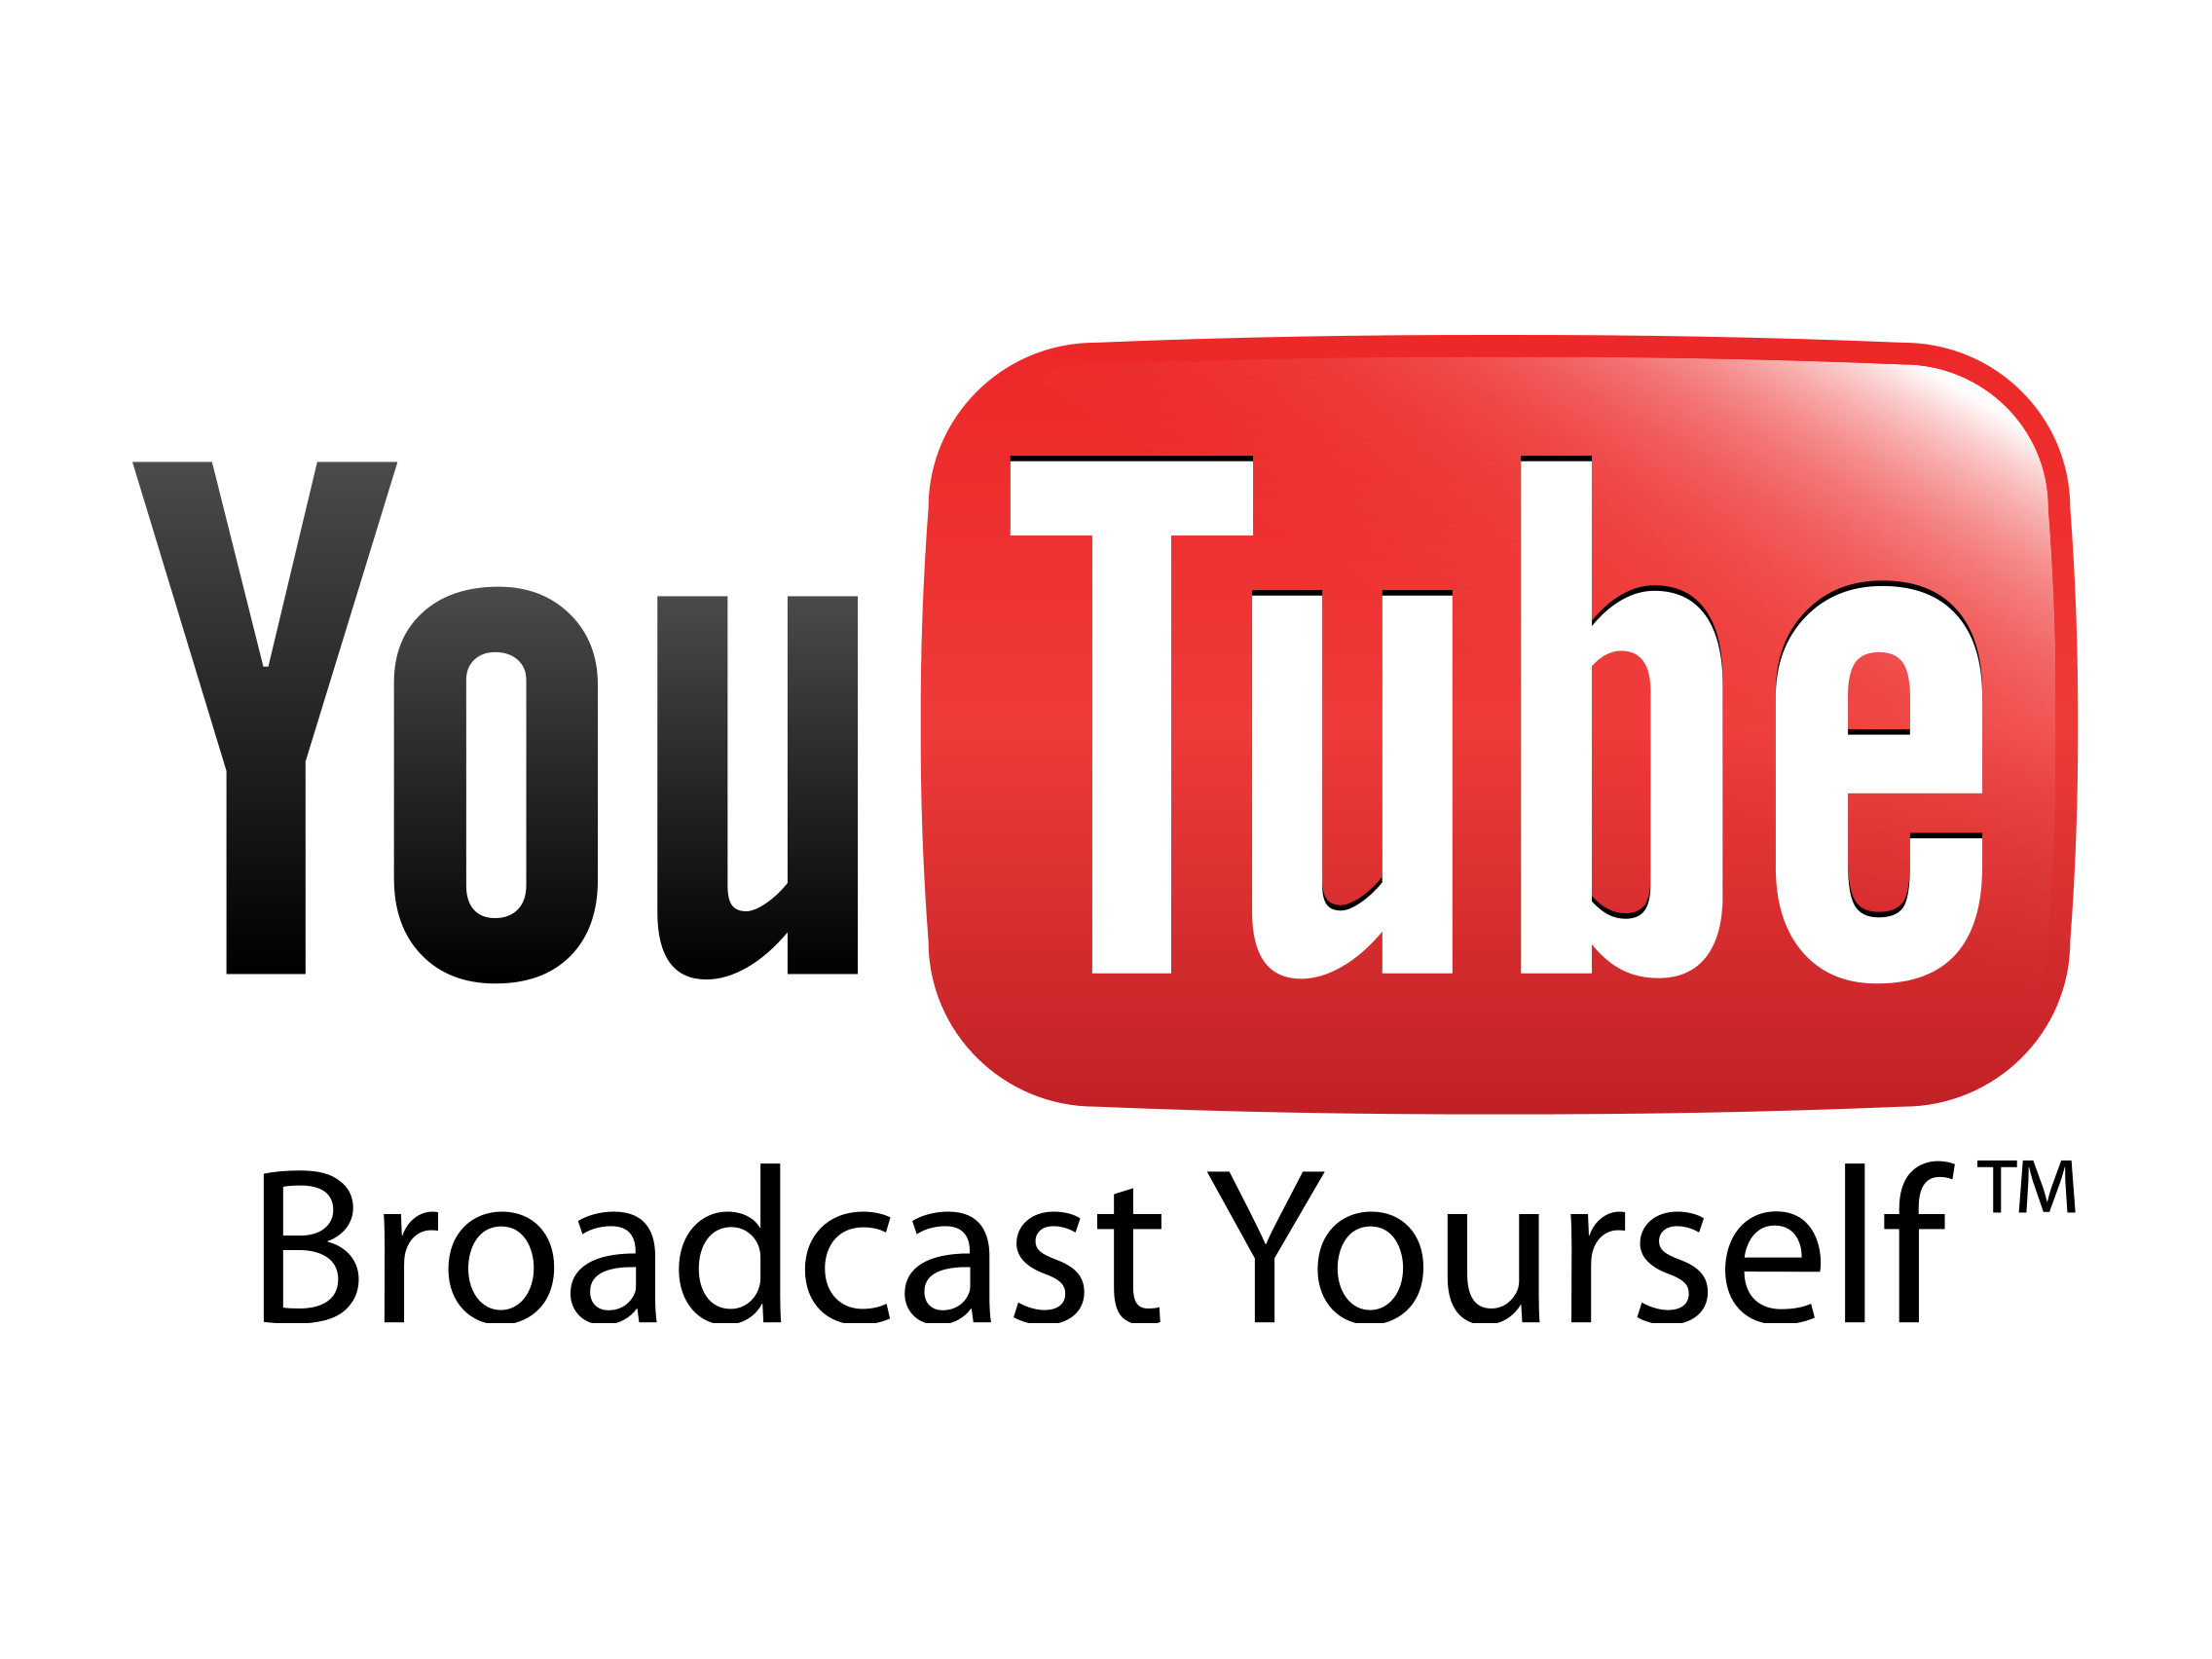 بالفيديو أكثر 5 اغاني مشاهدة علي يوتيوب في أغسطس 2015